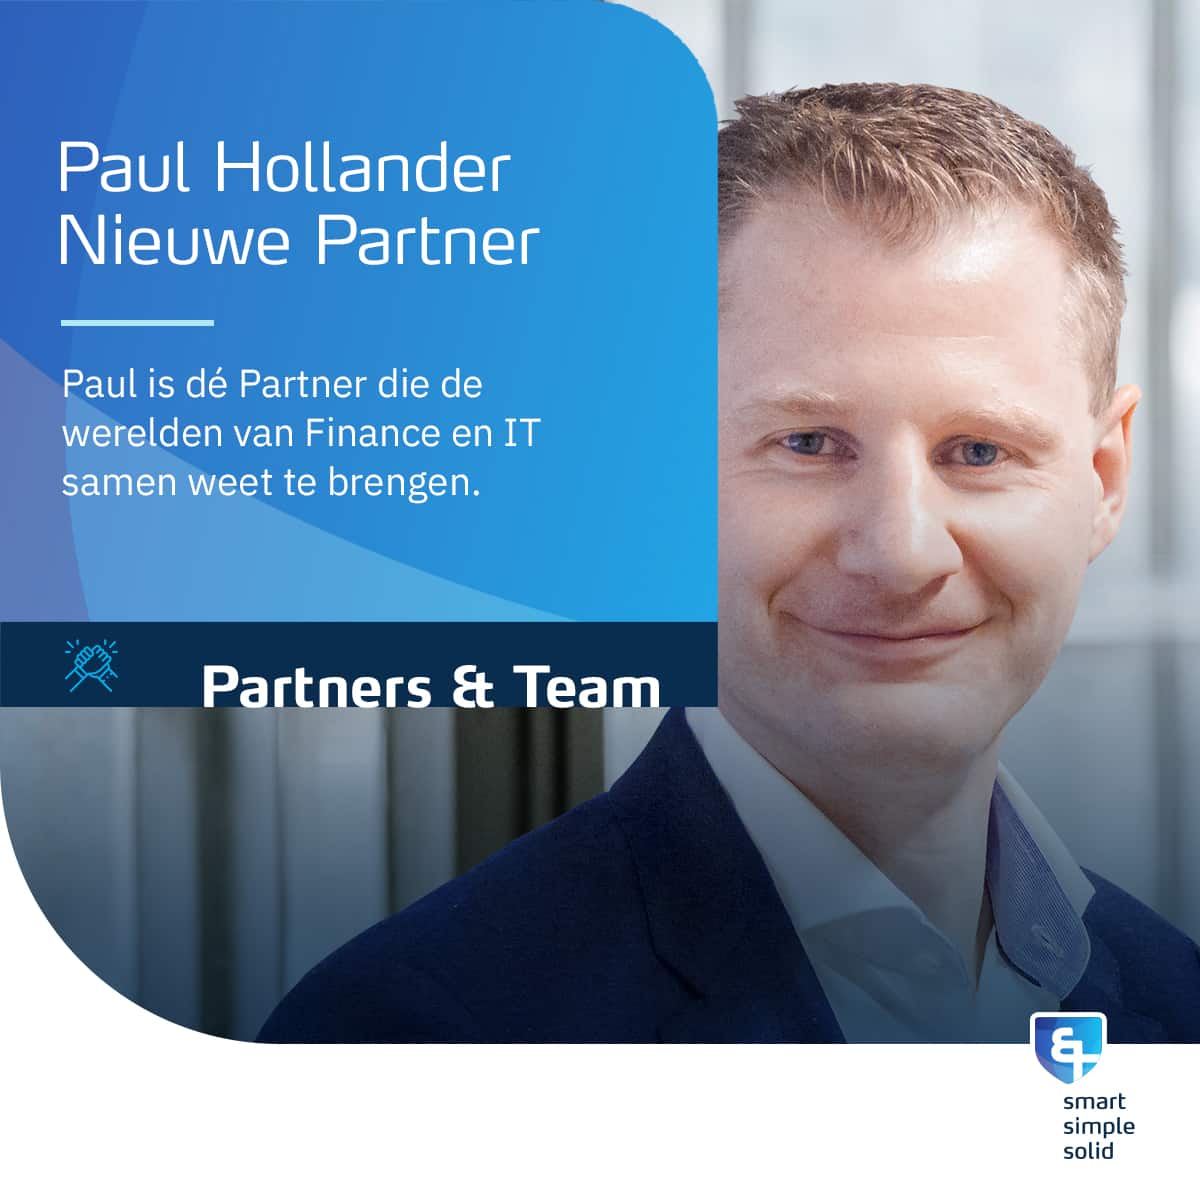 Paul Hollander New Partner